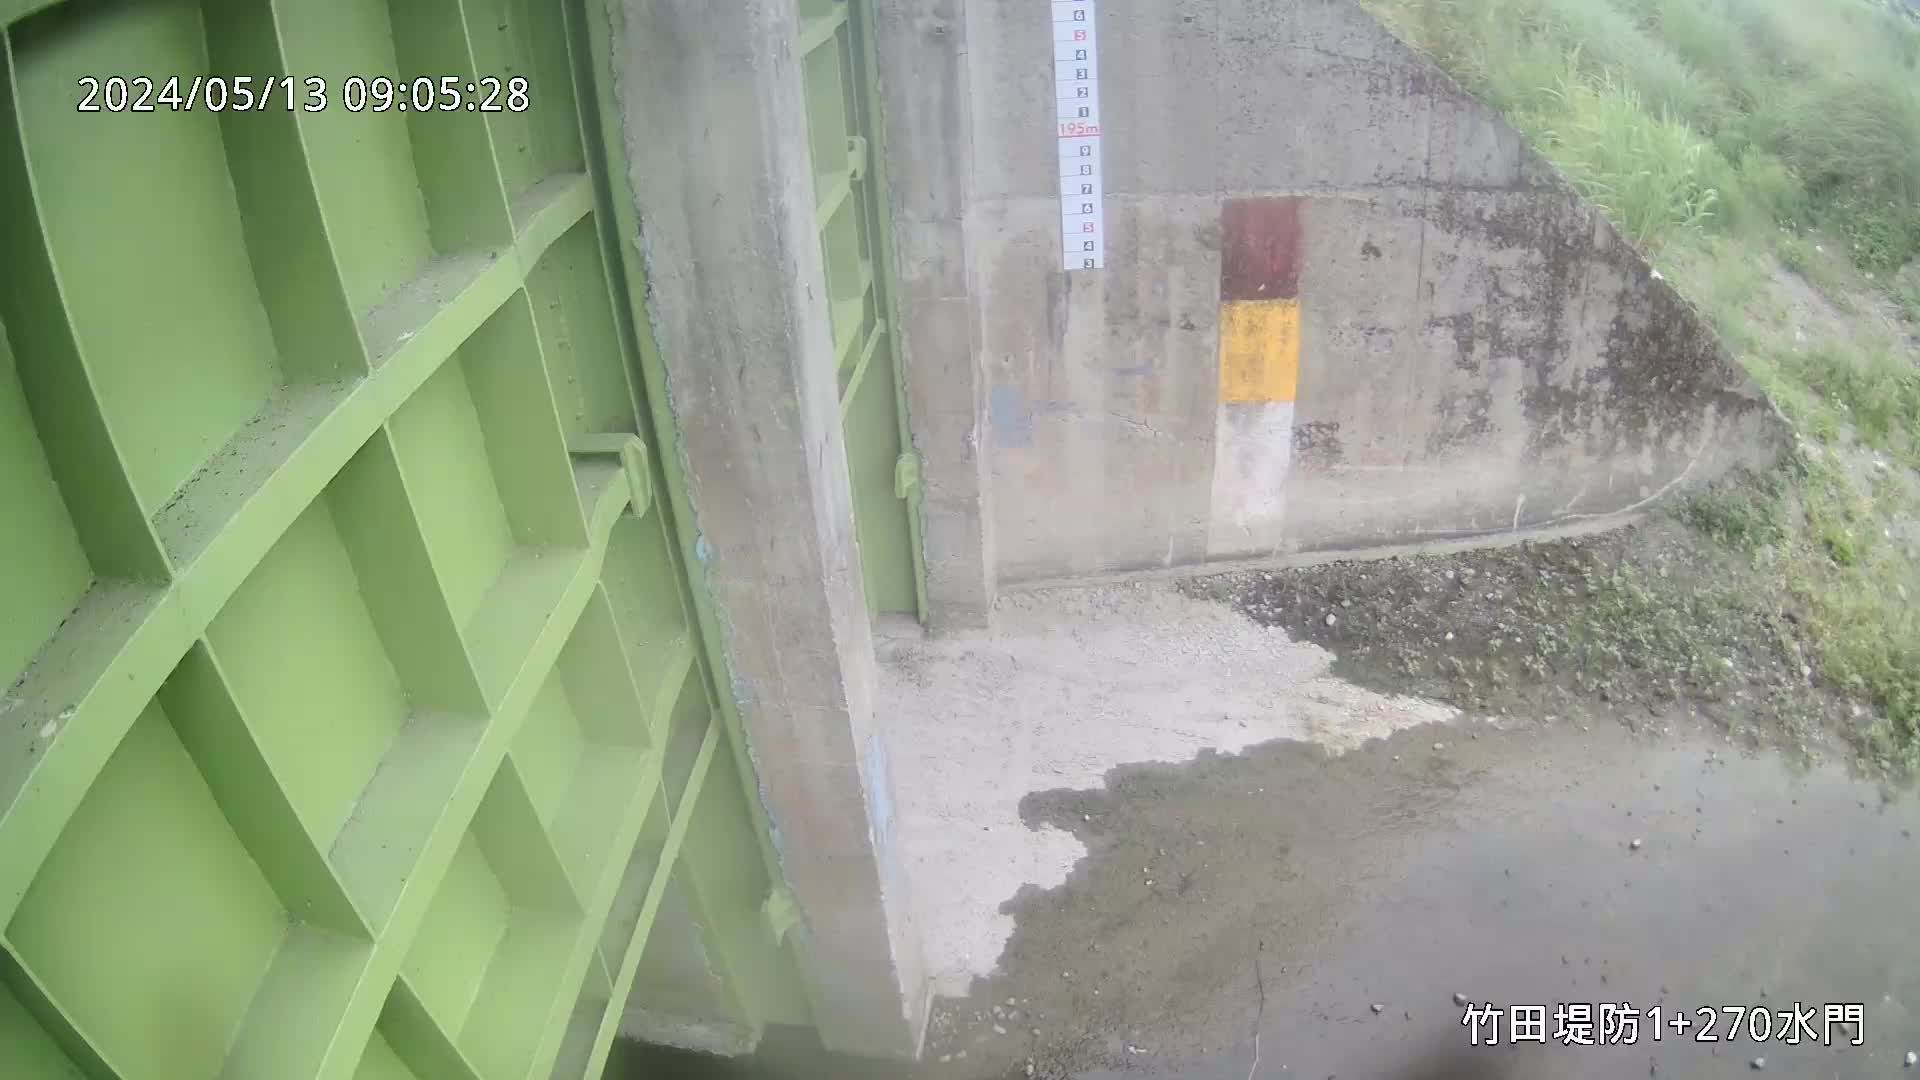 水利署水資源  九河局 竹田堤防1+270水門 槍型攝影機 距離5.8公里 氣溫26.1度